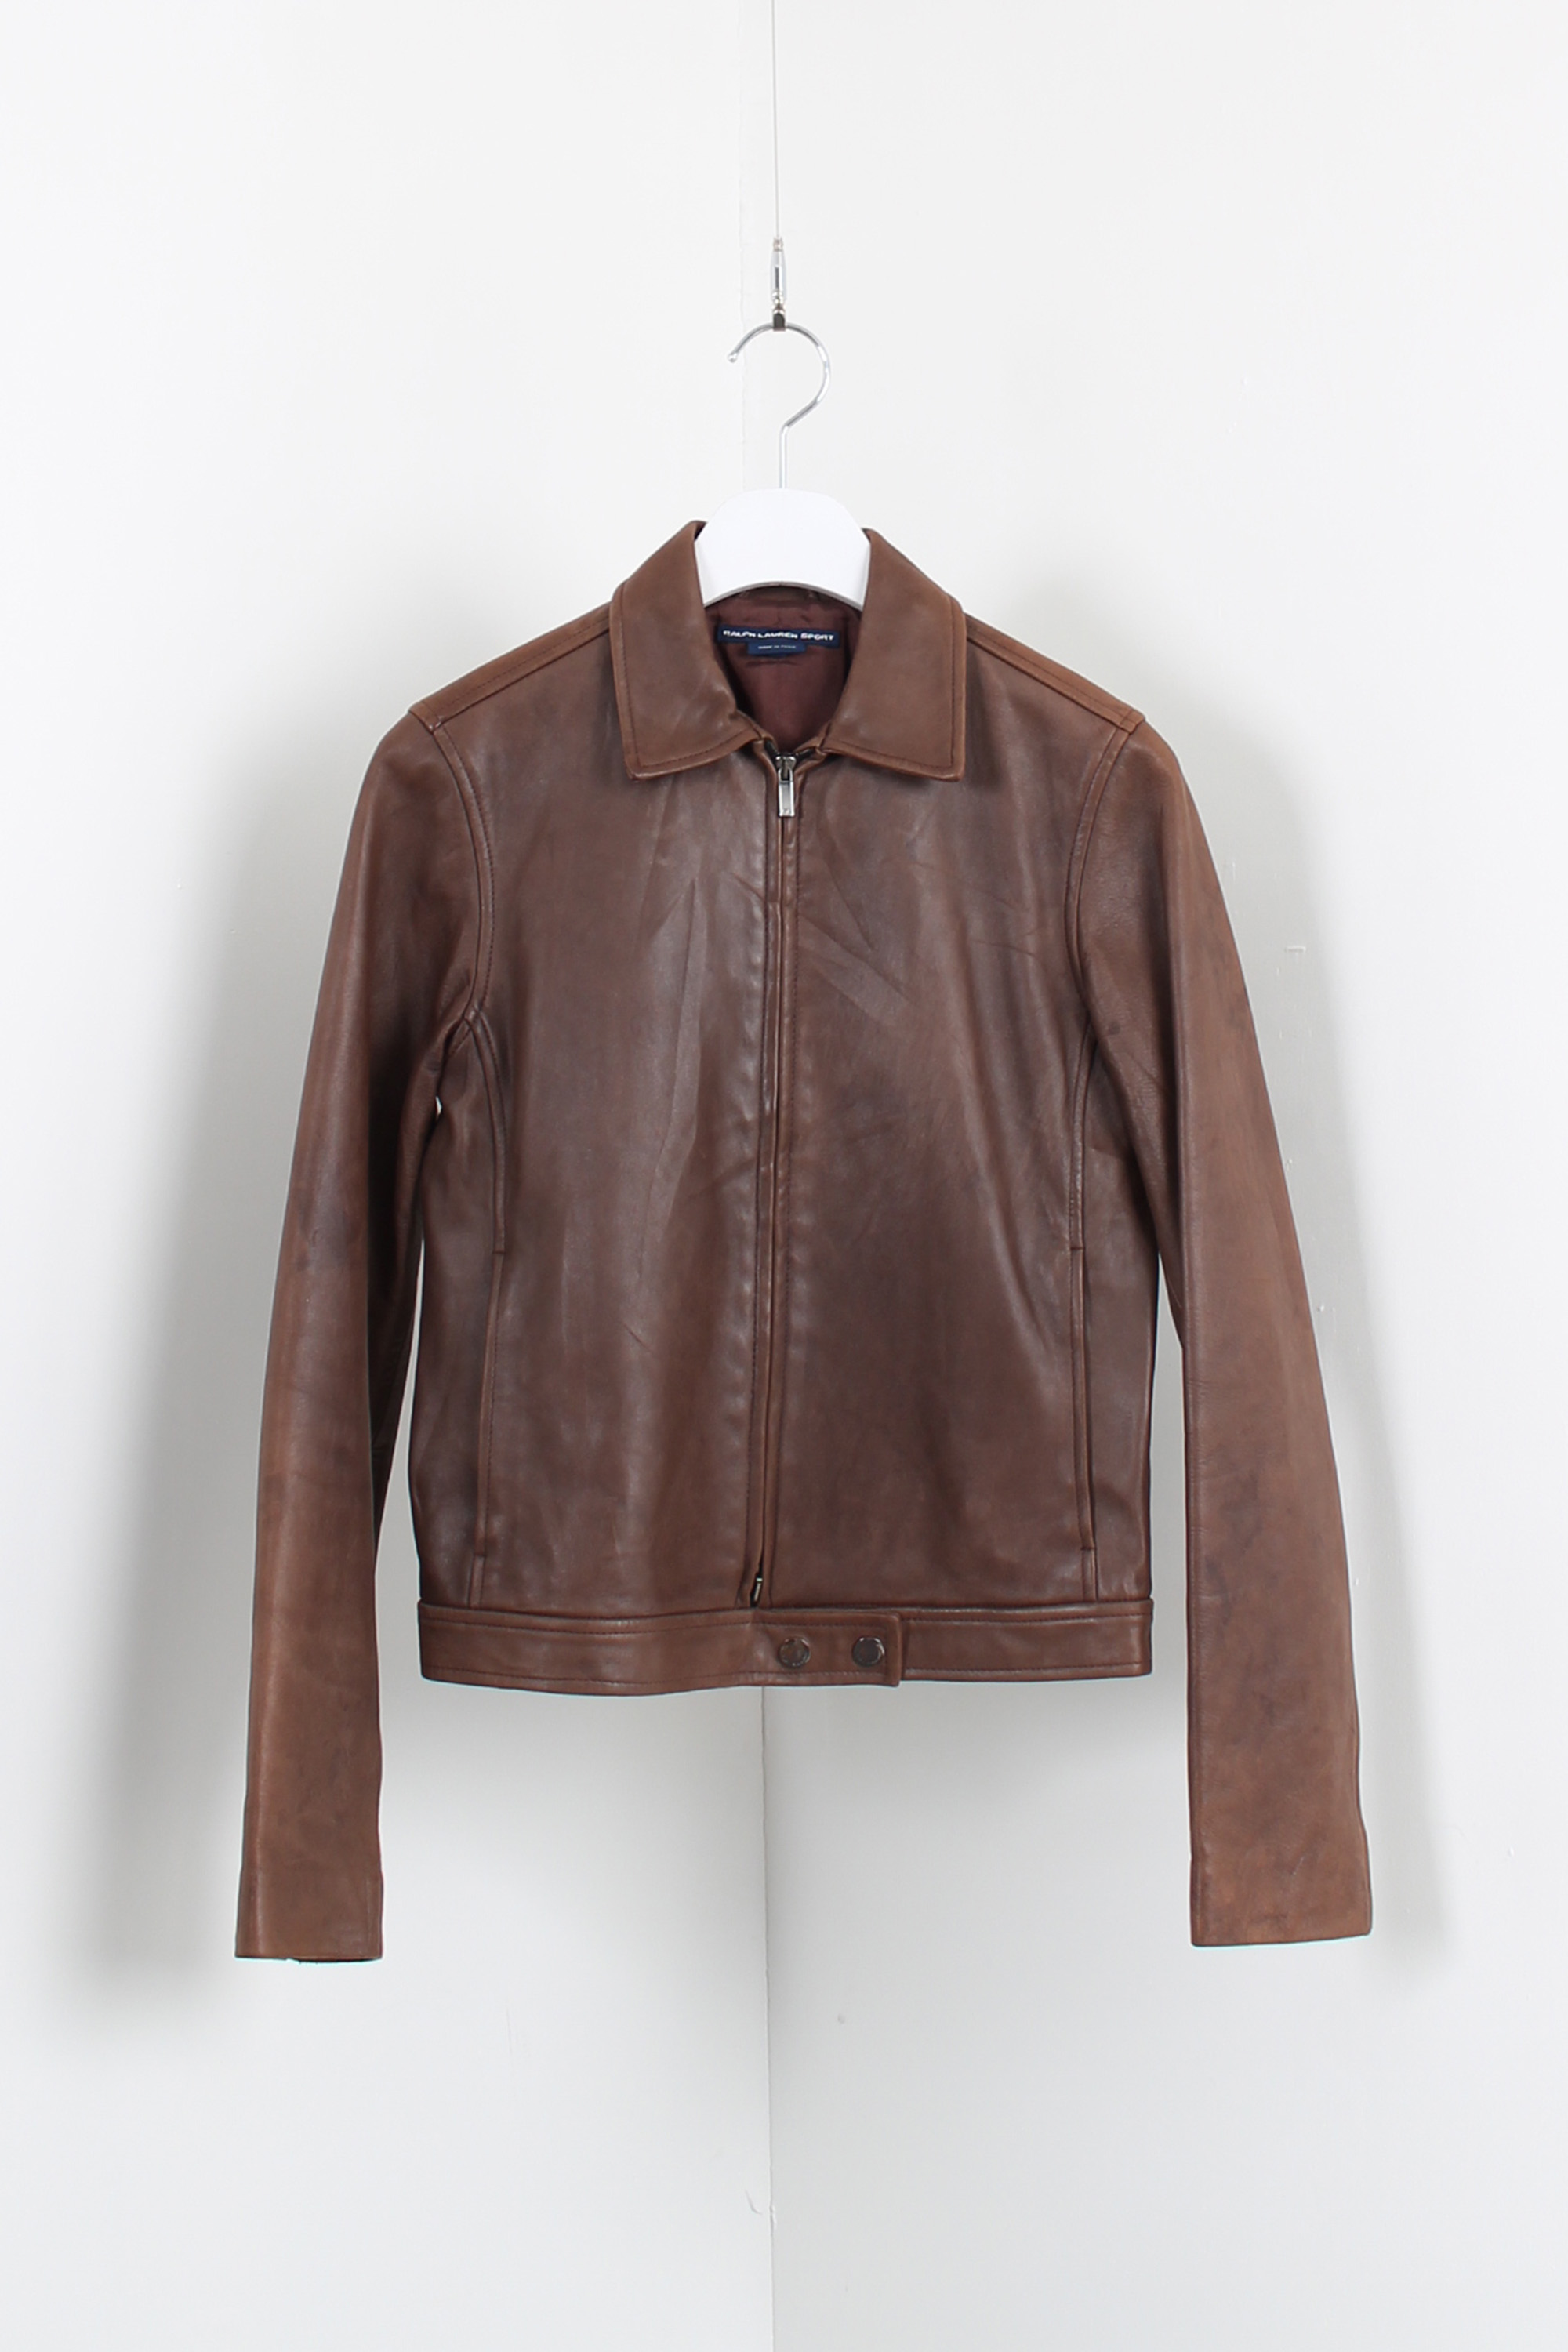 RALPH LAUREN SPORT leather jacket